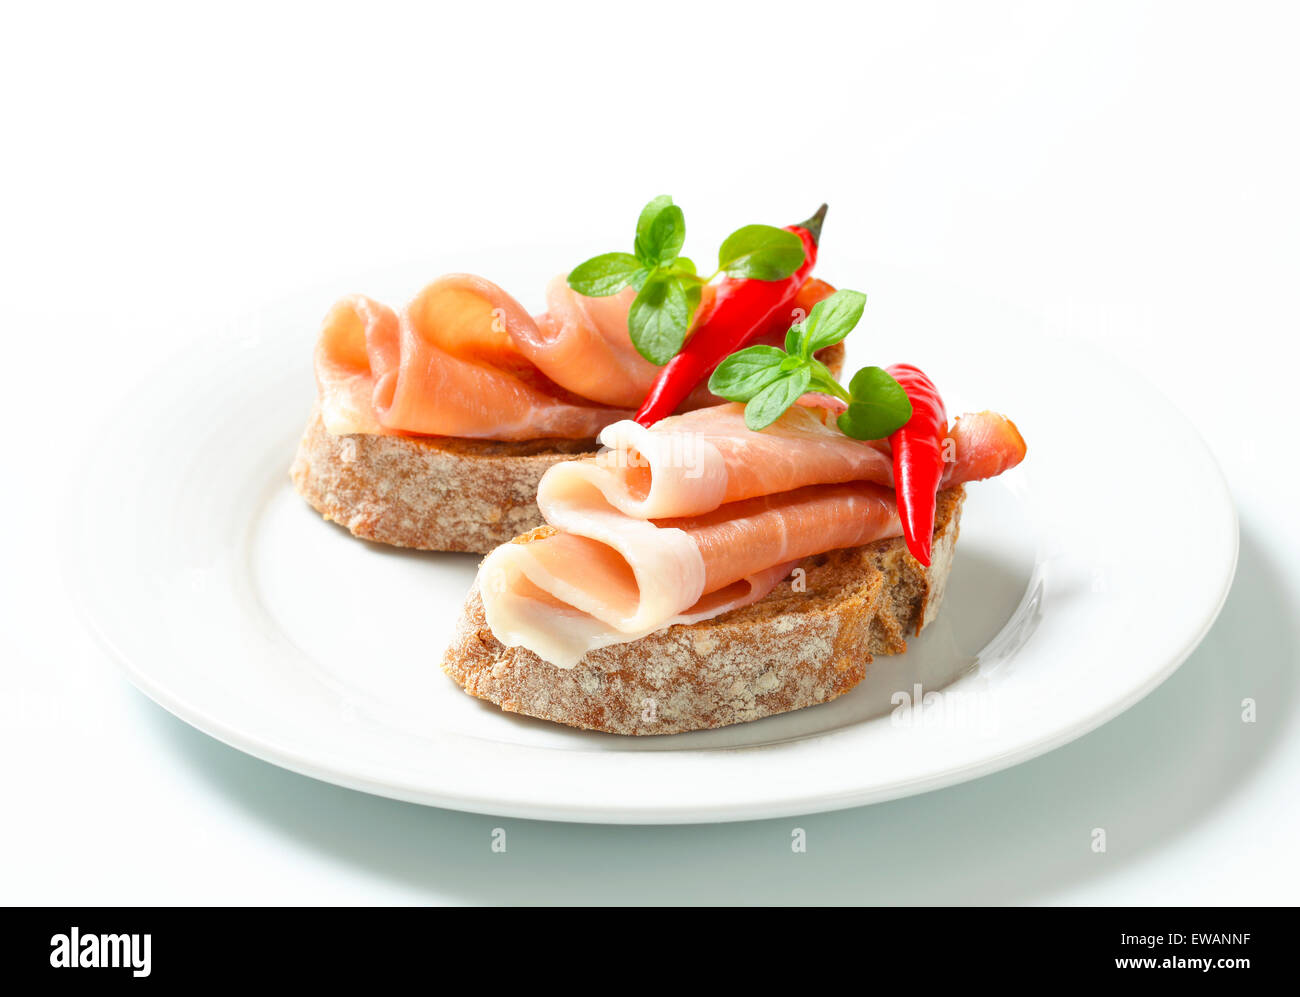 Le Prosciutto ouvert sandwiches garnis de piment rouge Banque D'Images